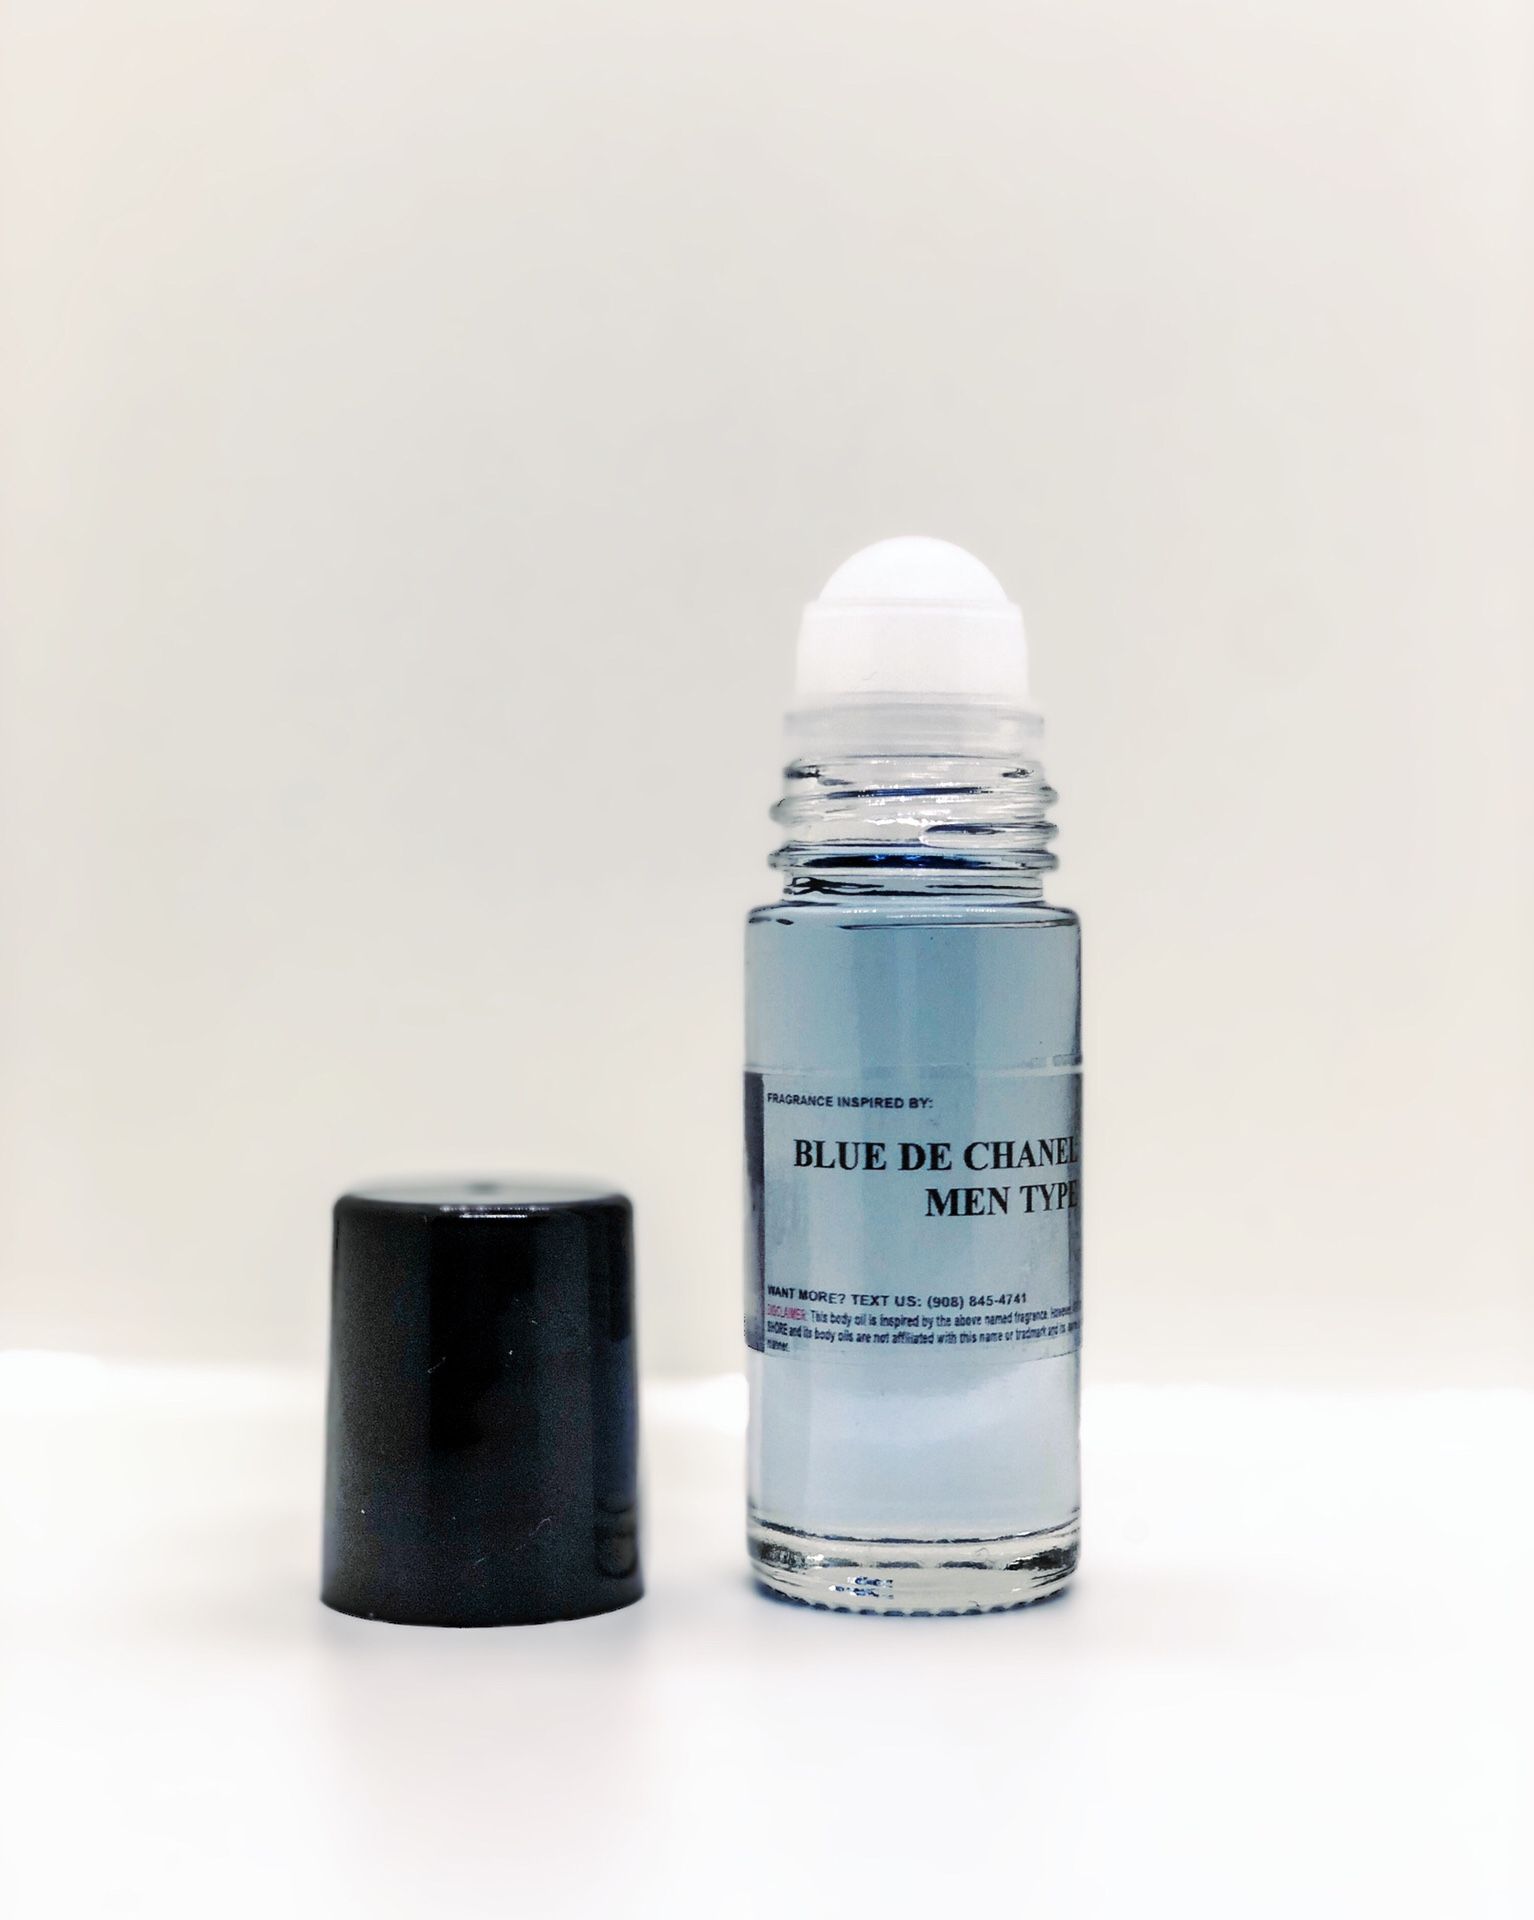 Blue de Chanel men type, 100% pure perfume oil | body oil by Aroma Shore